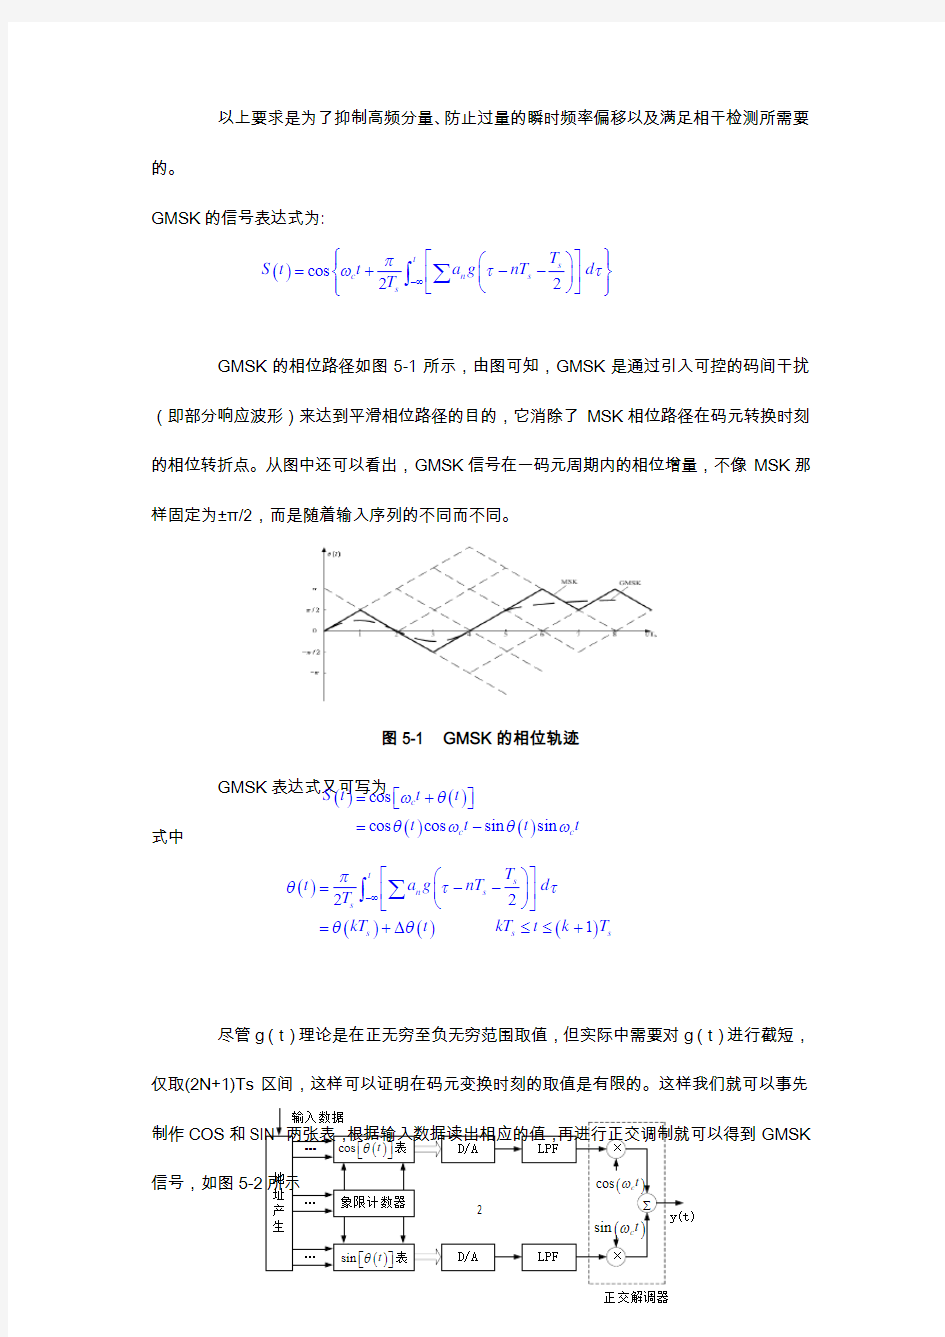 湘潭大学移动通信实验报告实验4-GMSK调制及相干解调